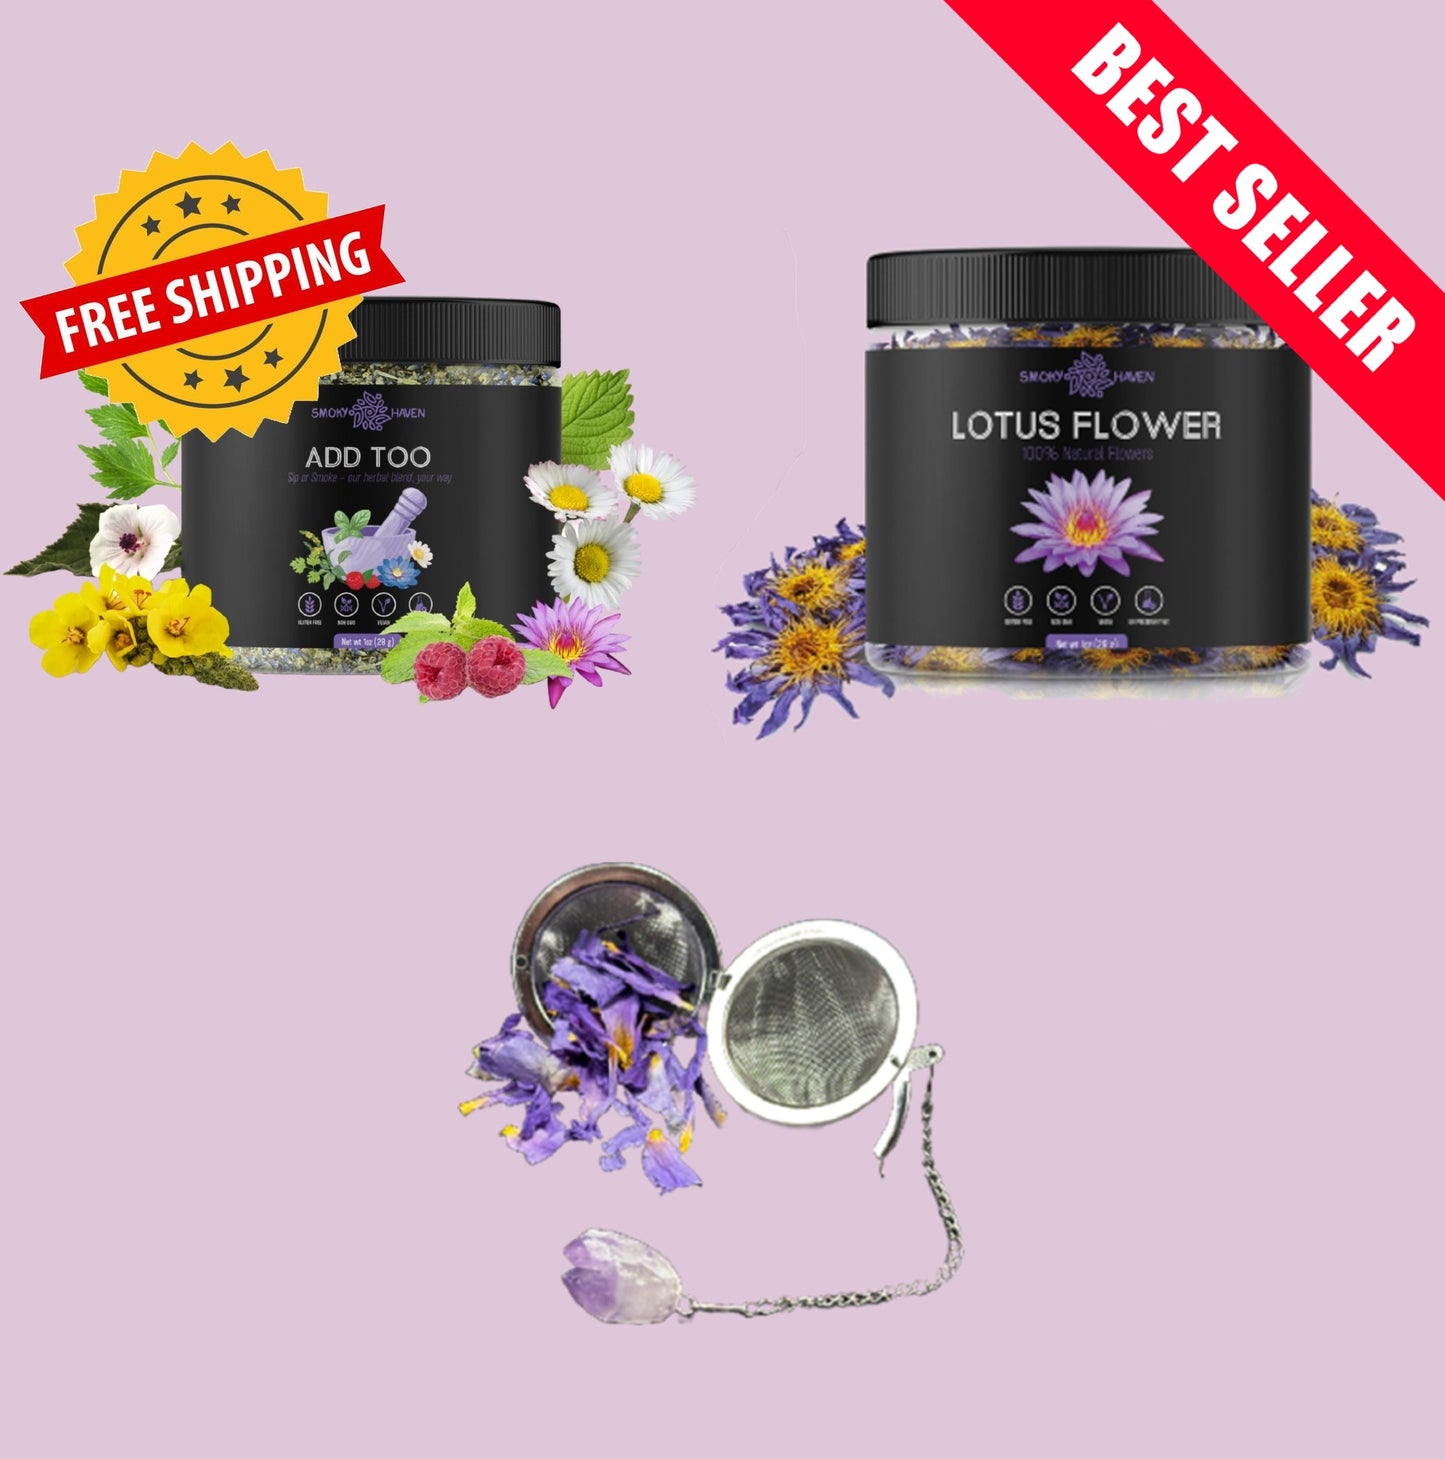 Blue Lotus & ADD TOO Bundle- Free Crystal Tea Steeper